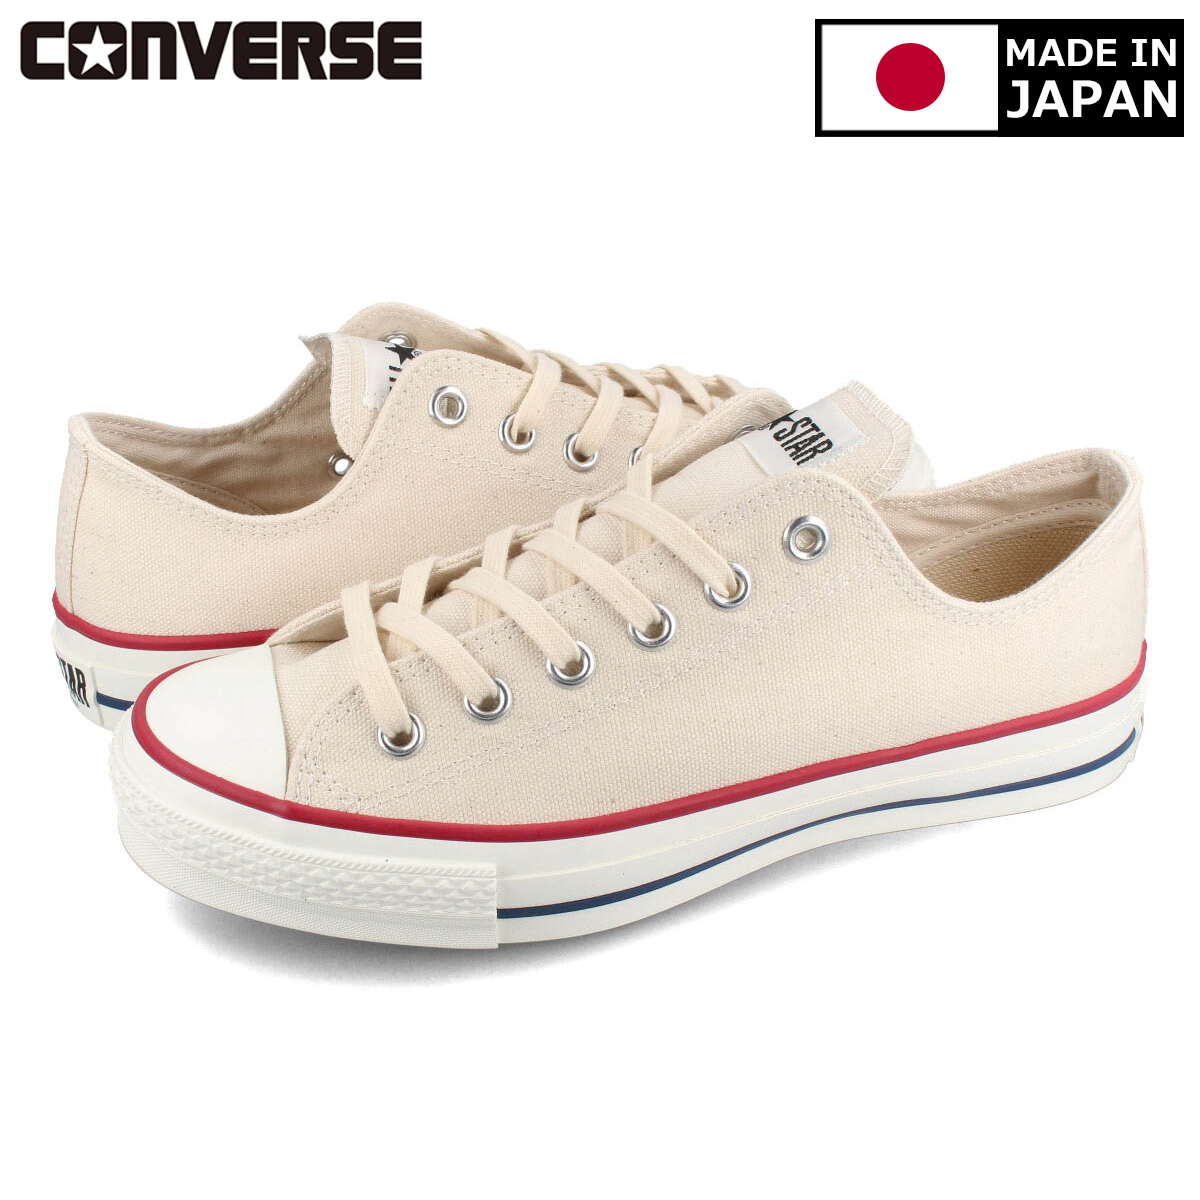 送料無料 CONVERSE コンバース メンズ 新色追加して再販 靴 スニーカー MADE IN JAPAN メイド イン 日本製 日本最大級の品揃え OX J WHITE STAR ジャパン ALL NATURAL オールスター 32167710 CANVAS